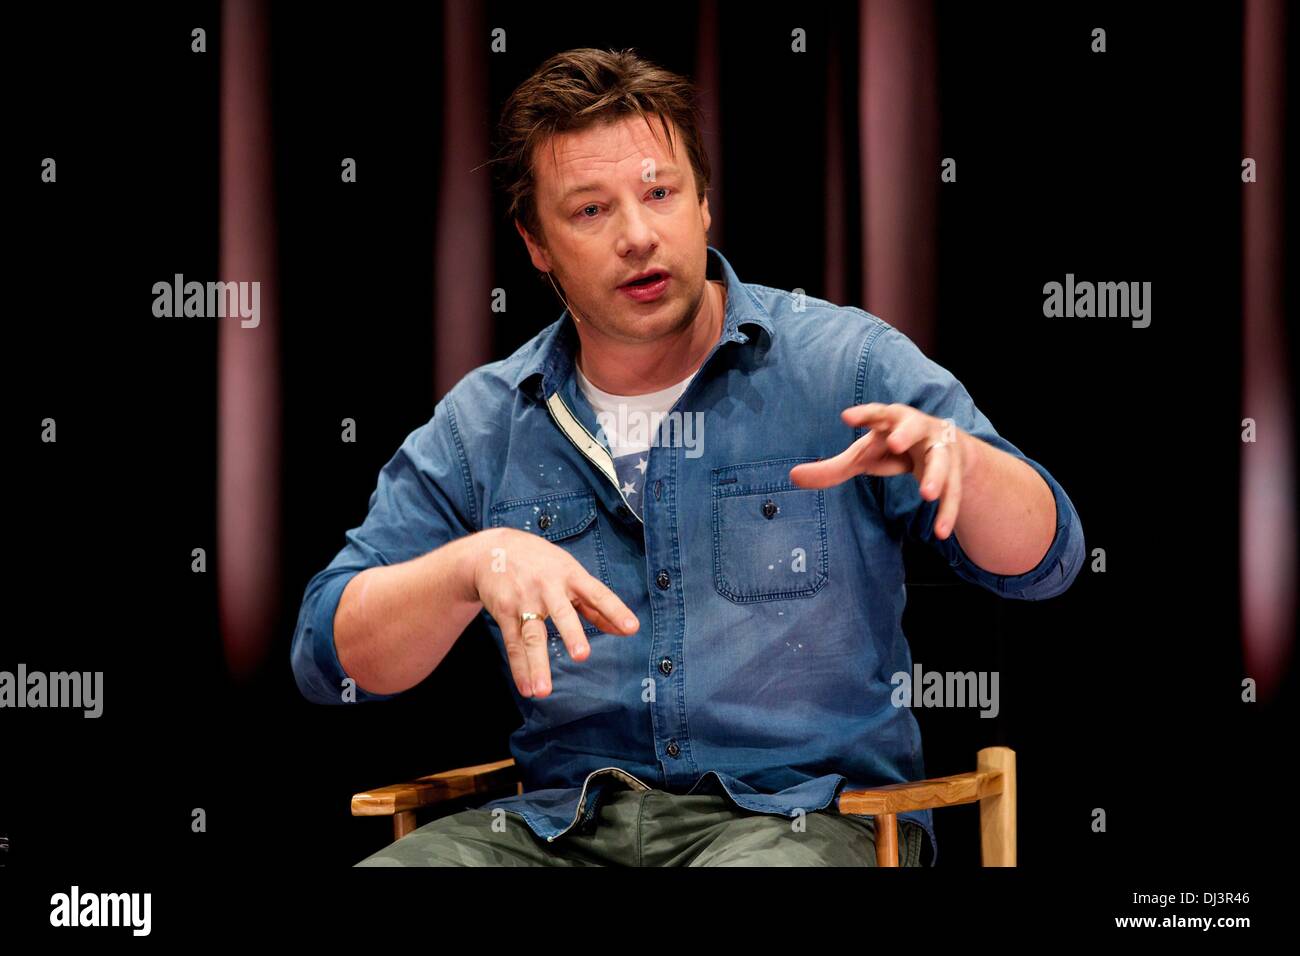 Berlín, Alemania. 20 de noviembre de 2013. Jamie Oliver nos habla de su campaña de educación alimentaria global y cómo Alemania puede desempeñar un papel clave en ayudar a propagar la revolución alimentaria en Apple Store en Berlín. Crédito: dpa picture alliance/Alamy Live News Foto de stock